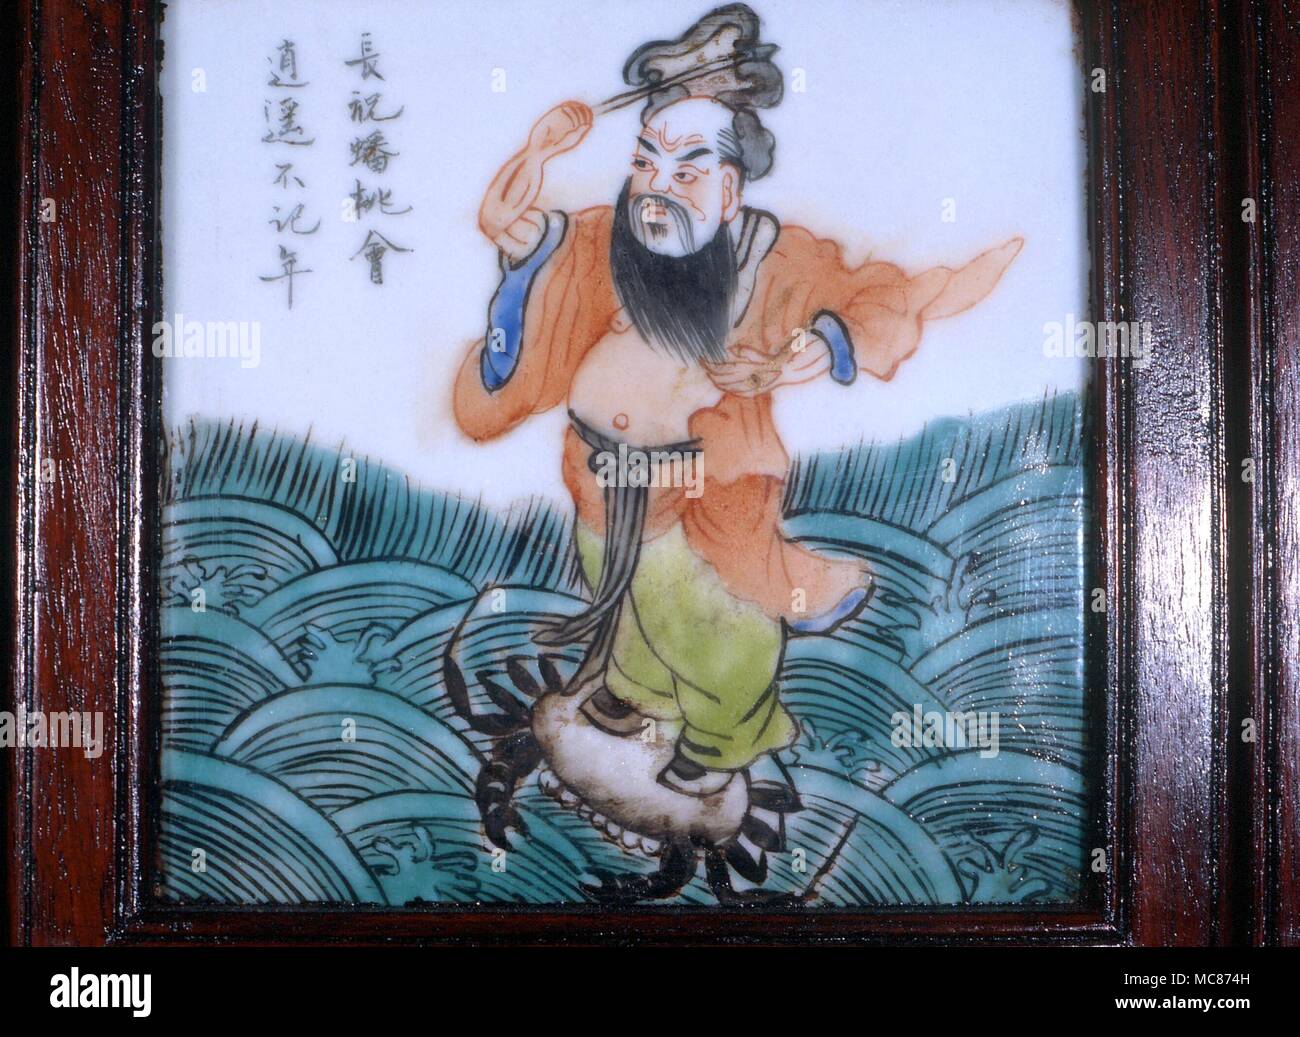 Taoísmo: Uno de los "Ocho Inmortales taoístas- (Pa Hsien). Chung-li Ch'uan, quien descubrió el elixir alquímico de la vida, con su emblema, el ventilador. A mediados del siglo xix, mosaico chino desde una pantalla Foto de stock